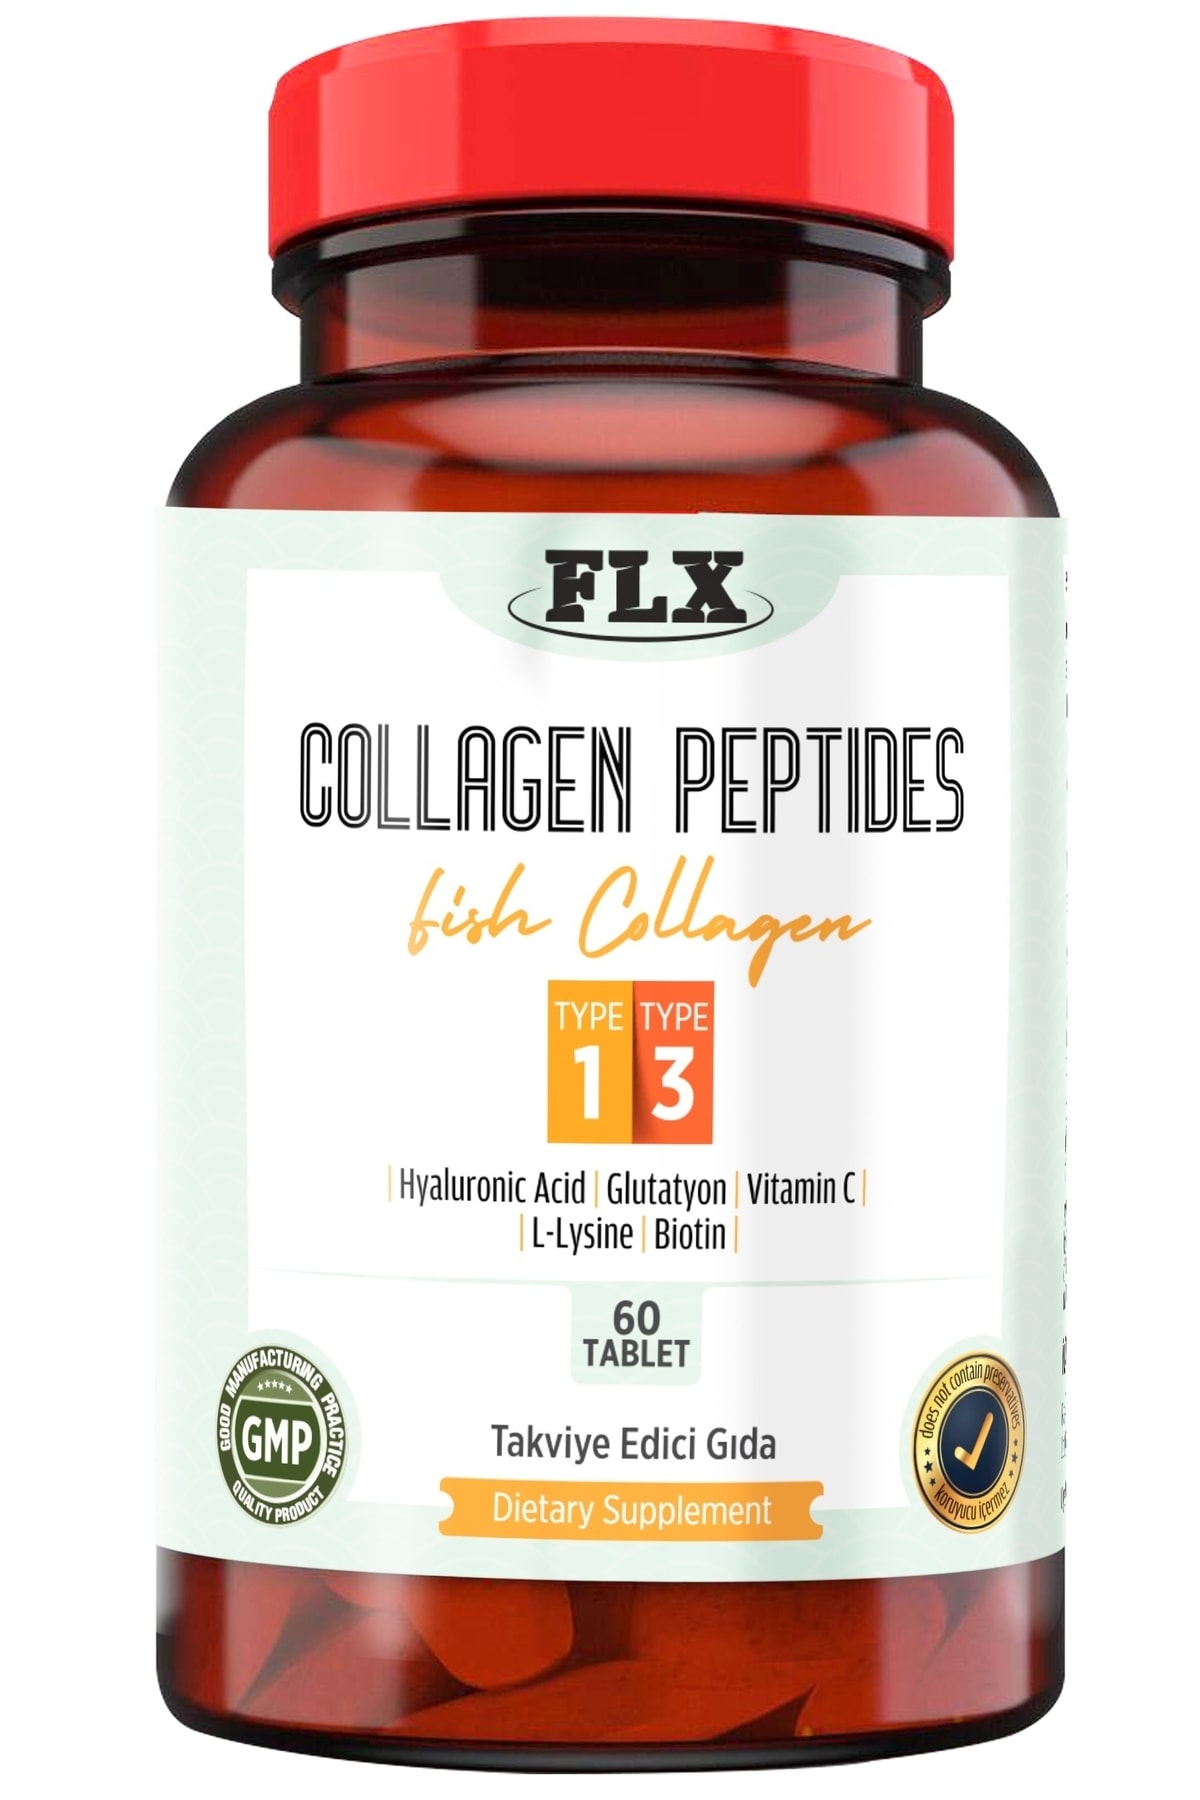 FLX Balık Kolajeni Collagen Peptides Tip 1-3 Fish Kolajen 60 Tablet